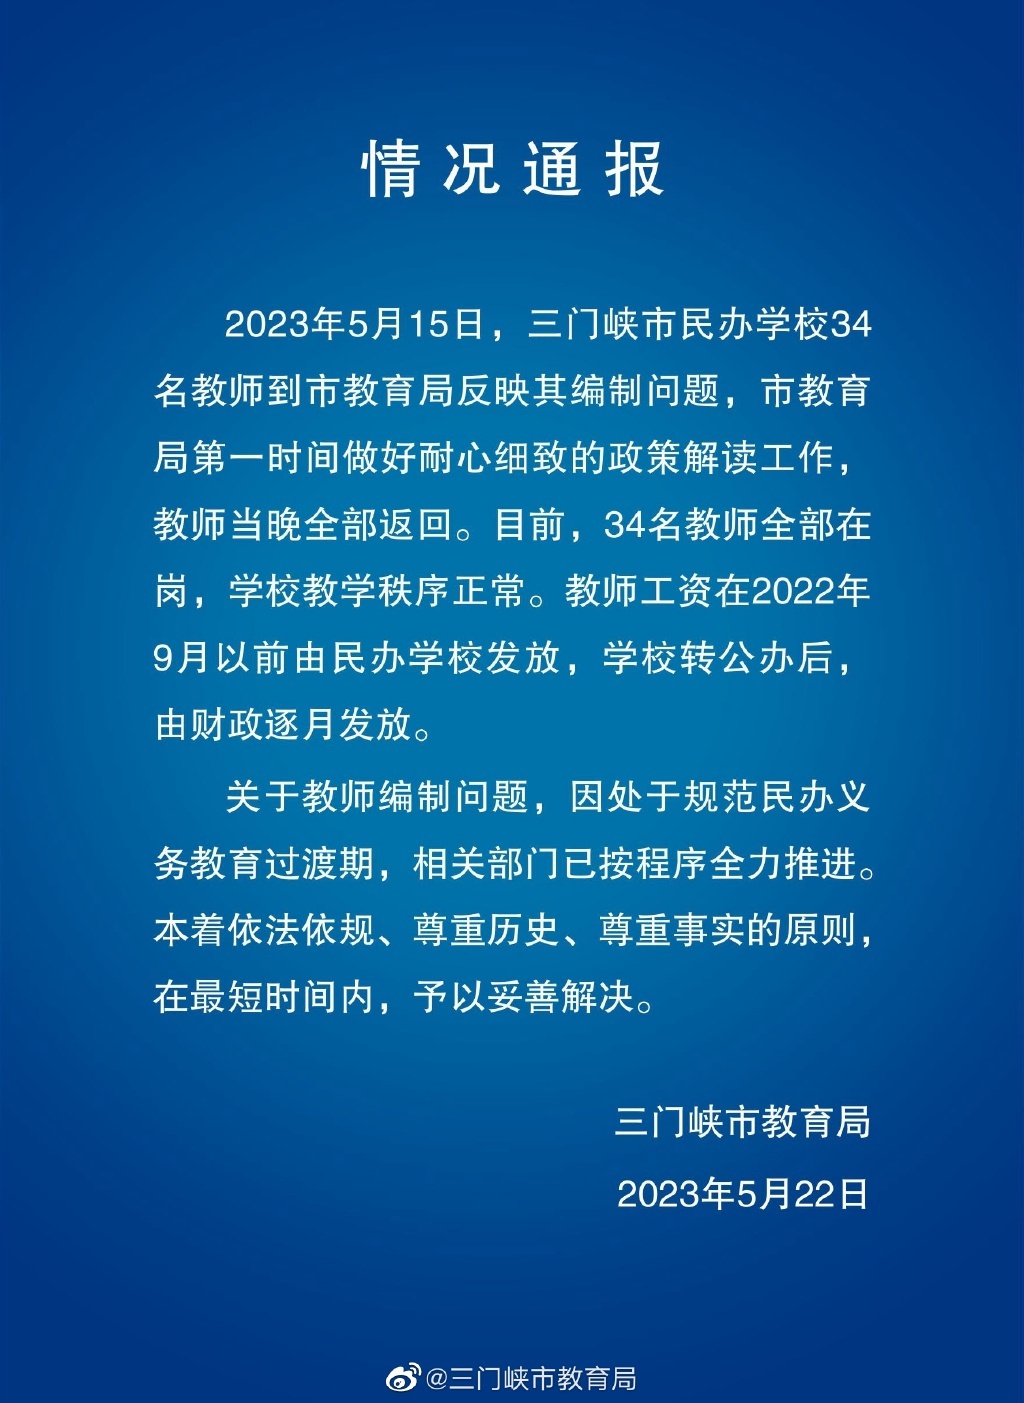 河南三门峡市教育局通报“民办学校34名教师反映其编制问题”